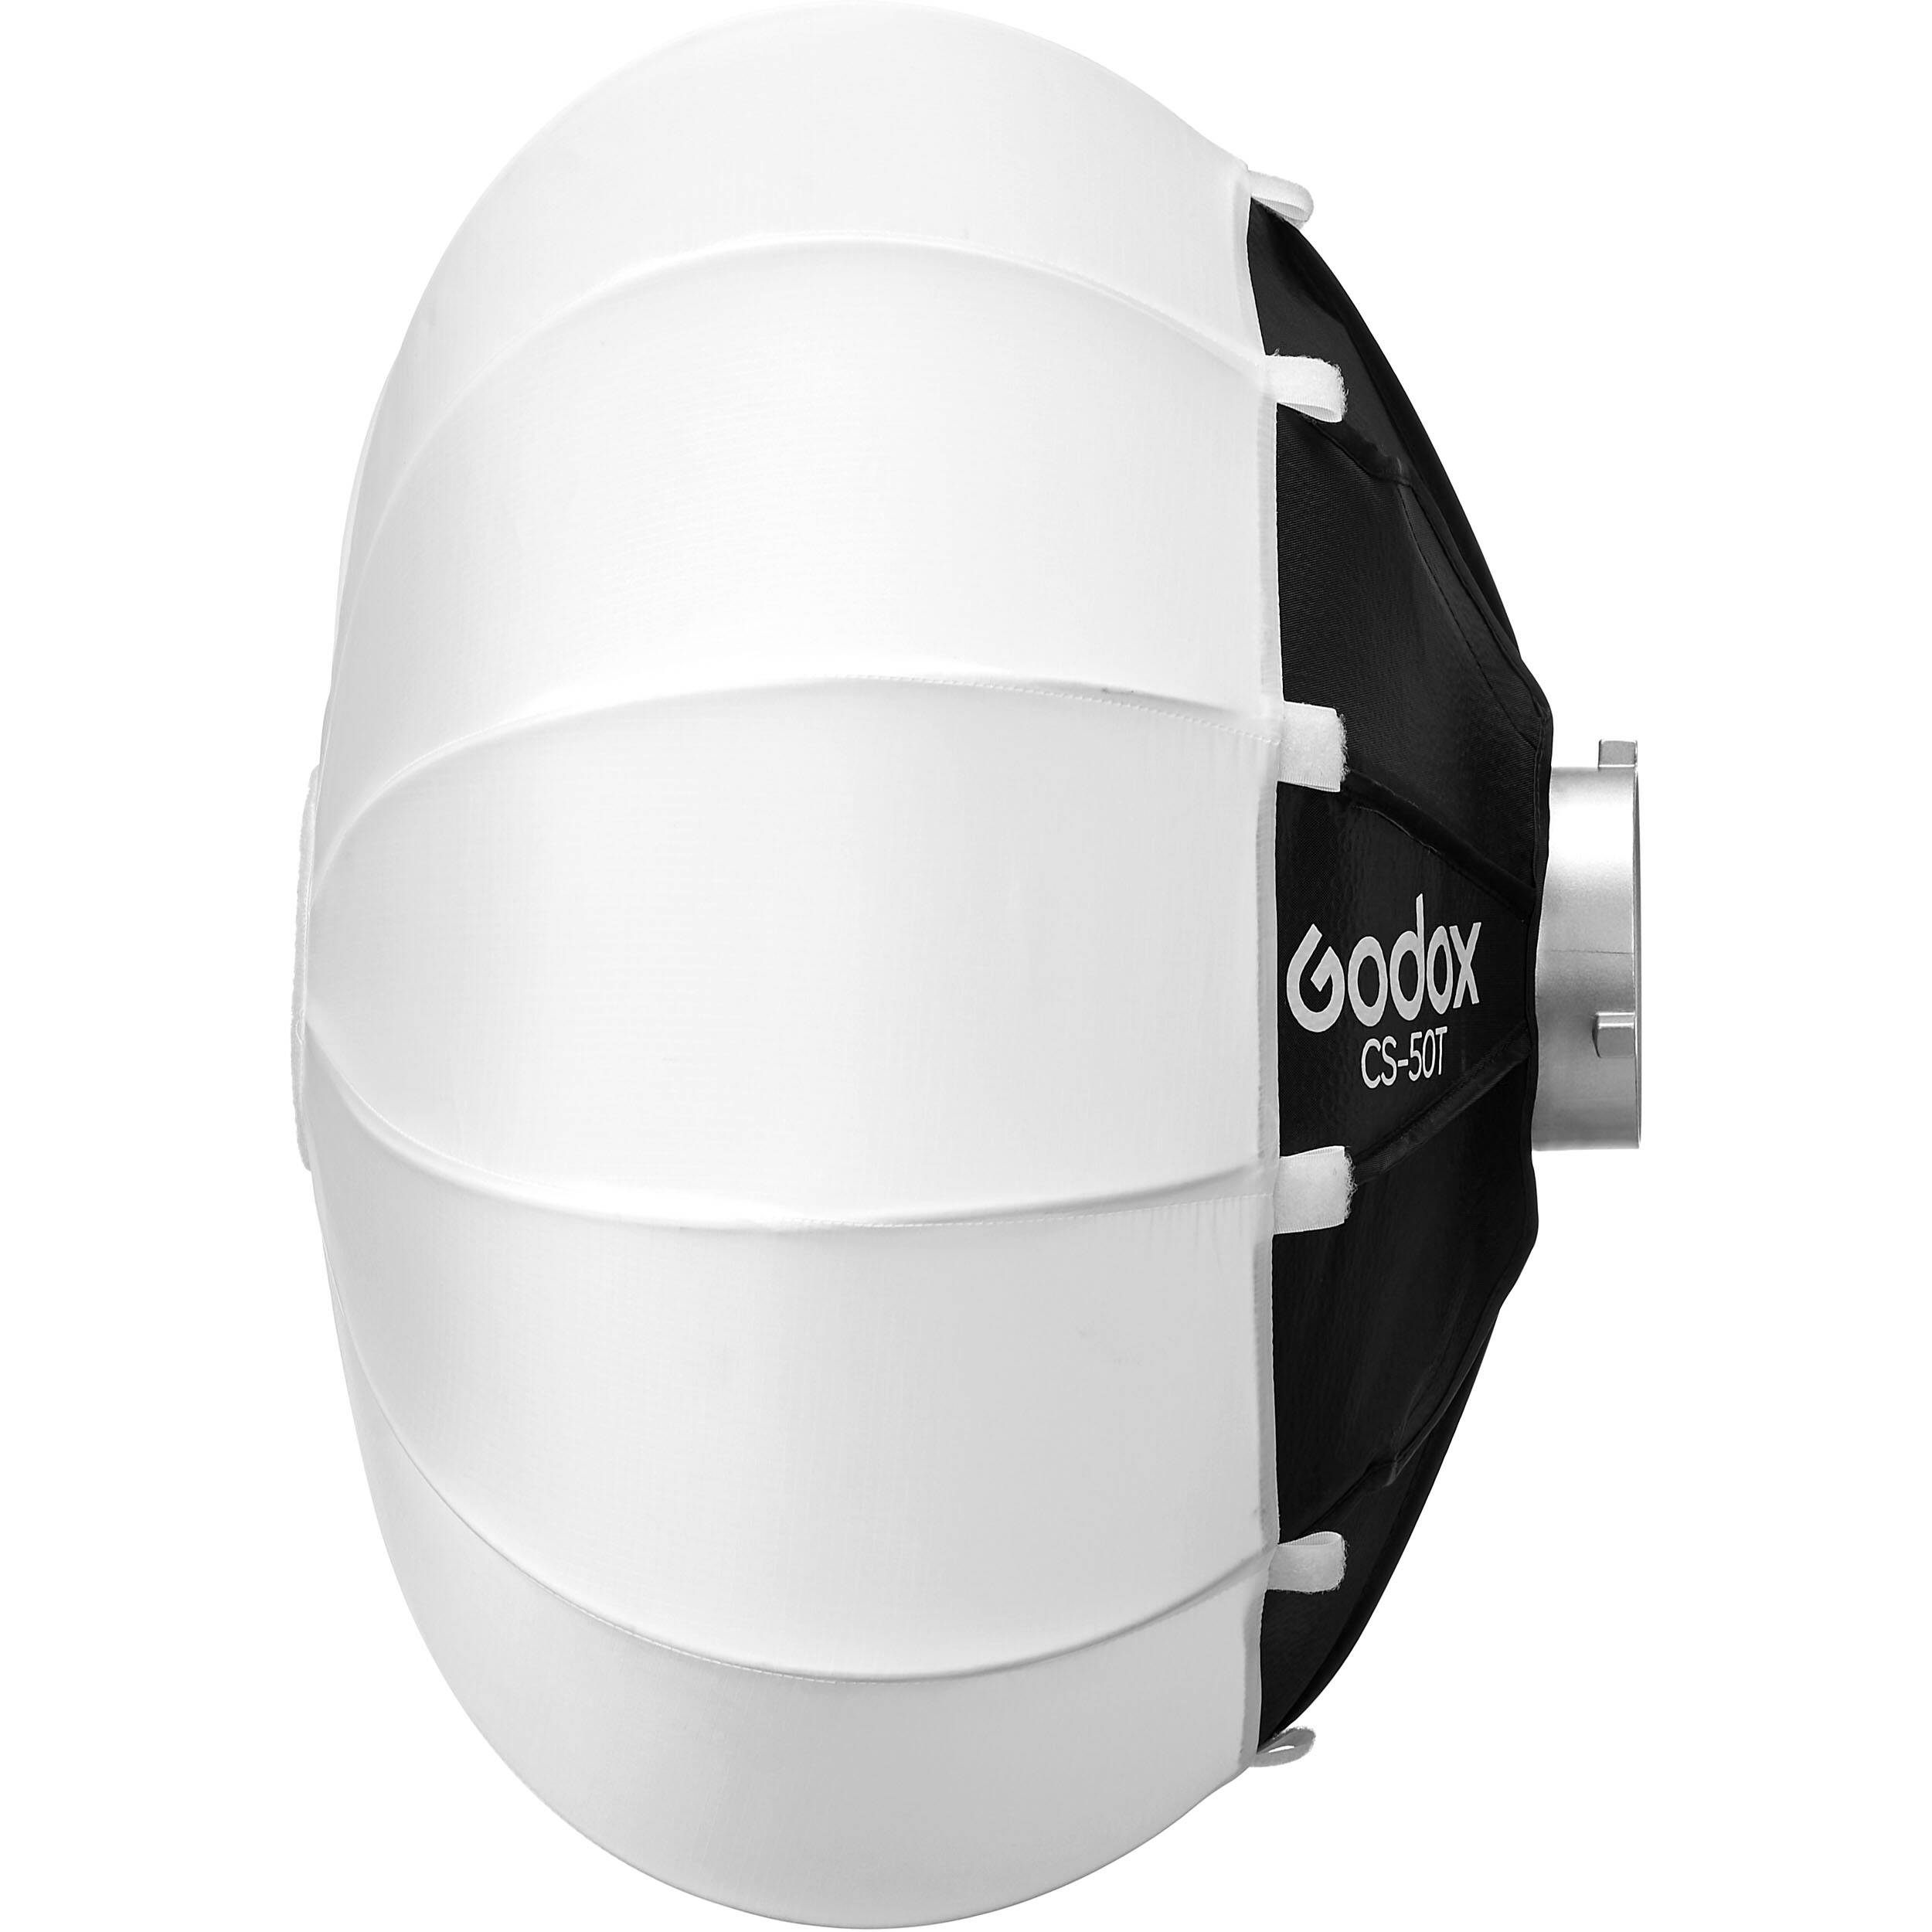    Godox CS-50T   Ultra-mart